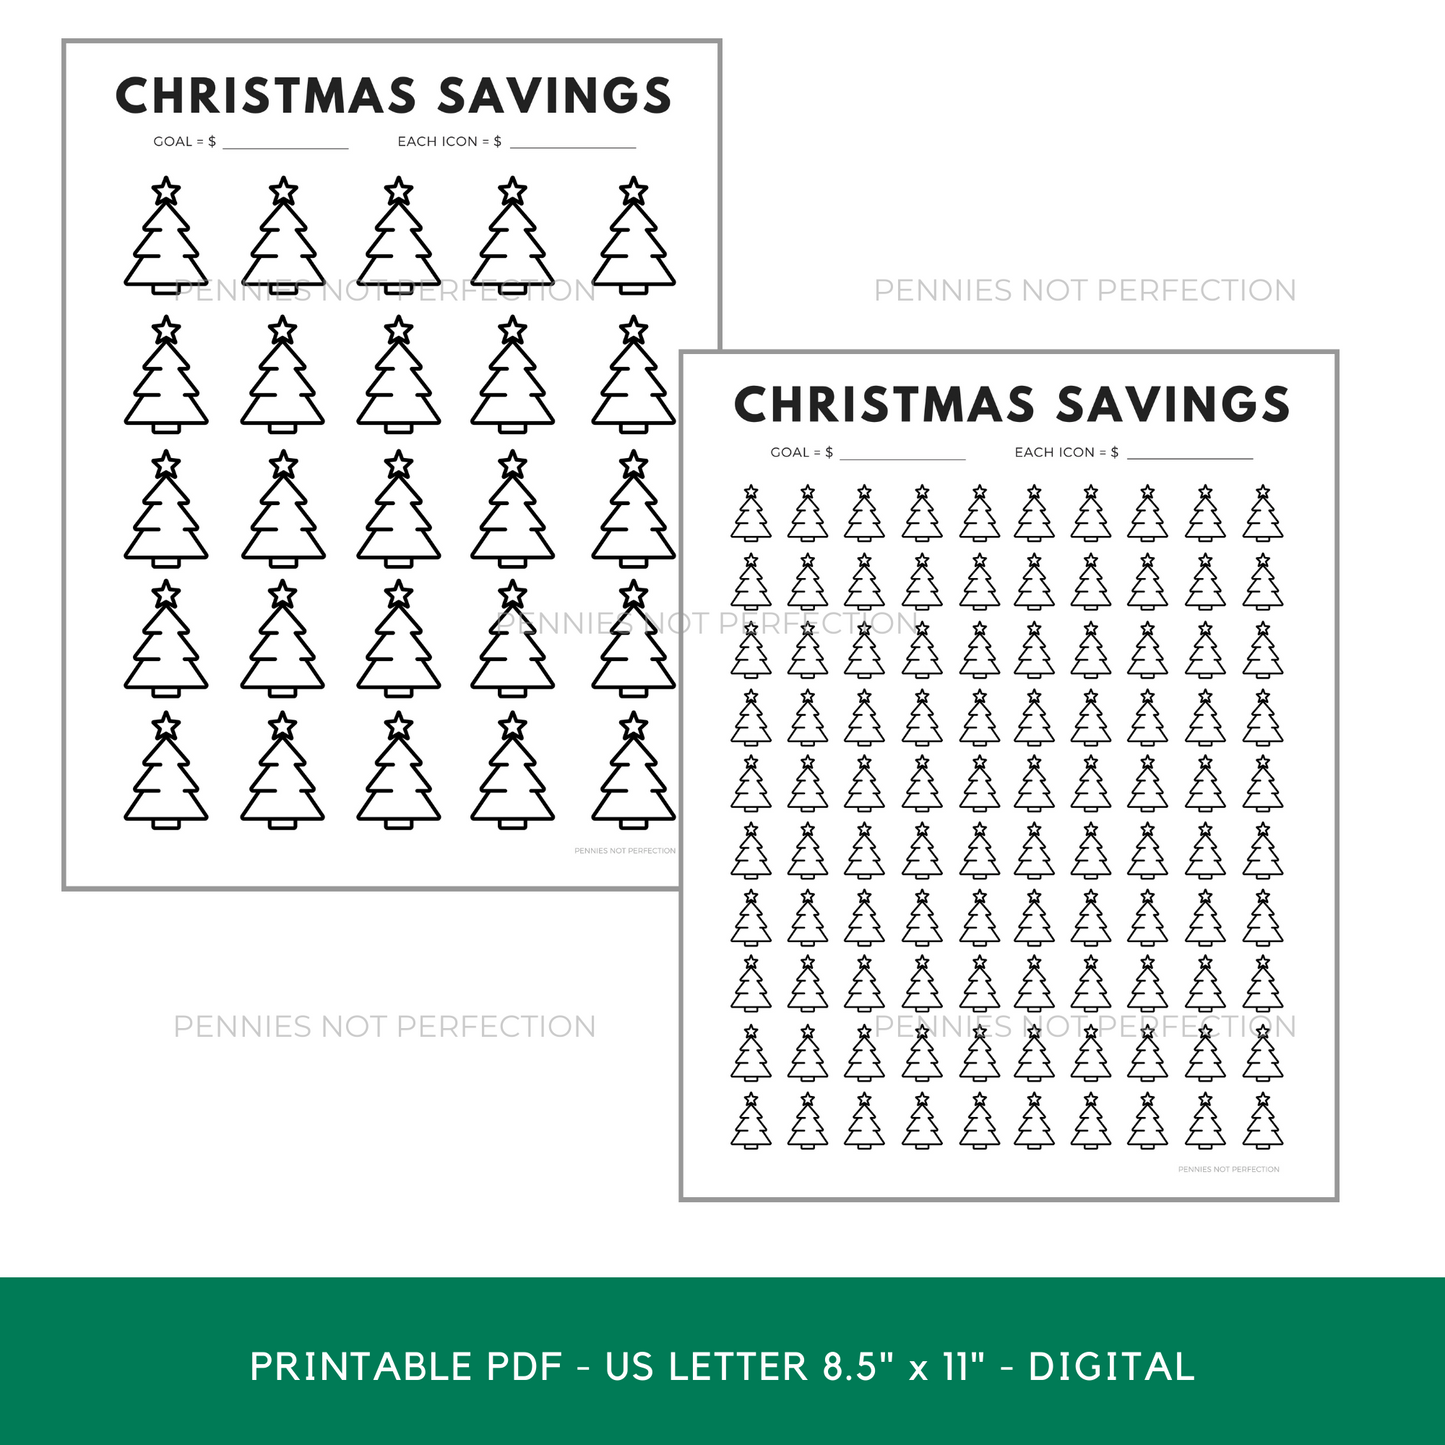 Christmas Savings Tracker Printable | Savings Tree Coloring Chart